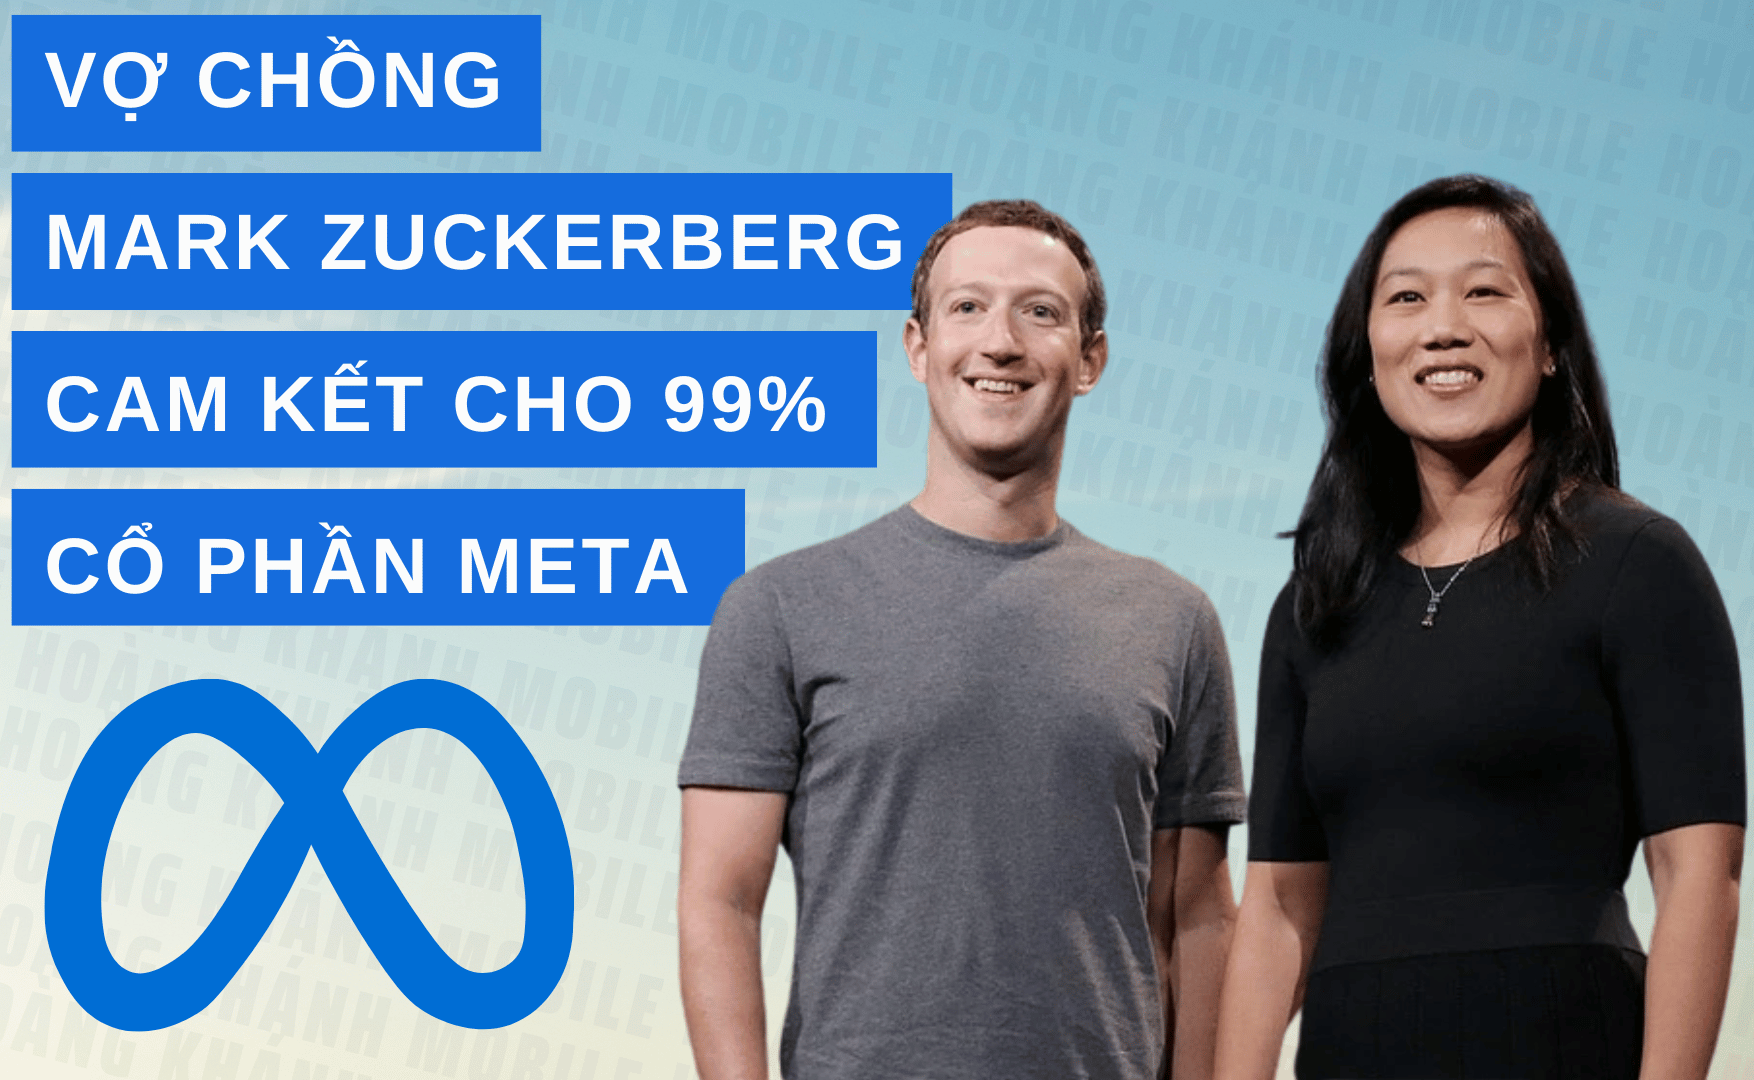 Vợ chồng Mark Zuckerberg thành lập trung tâm sinh học mới, cam kết cho đi 99% cổ phần Meta để làm điều cao cả